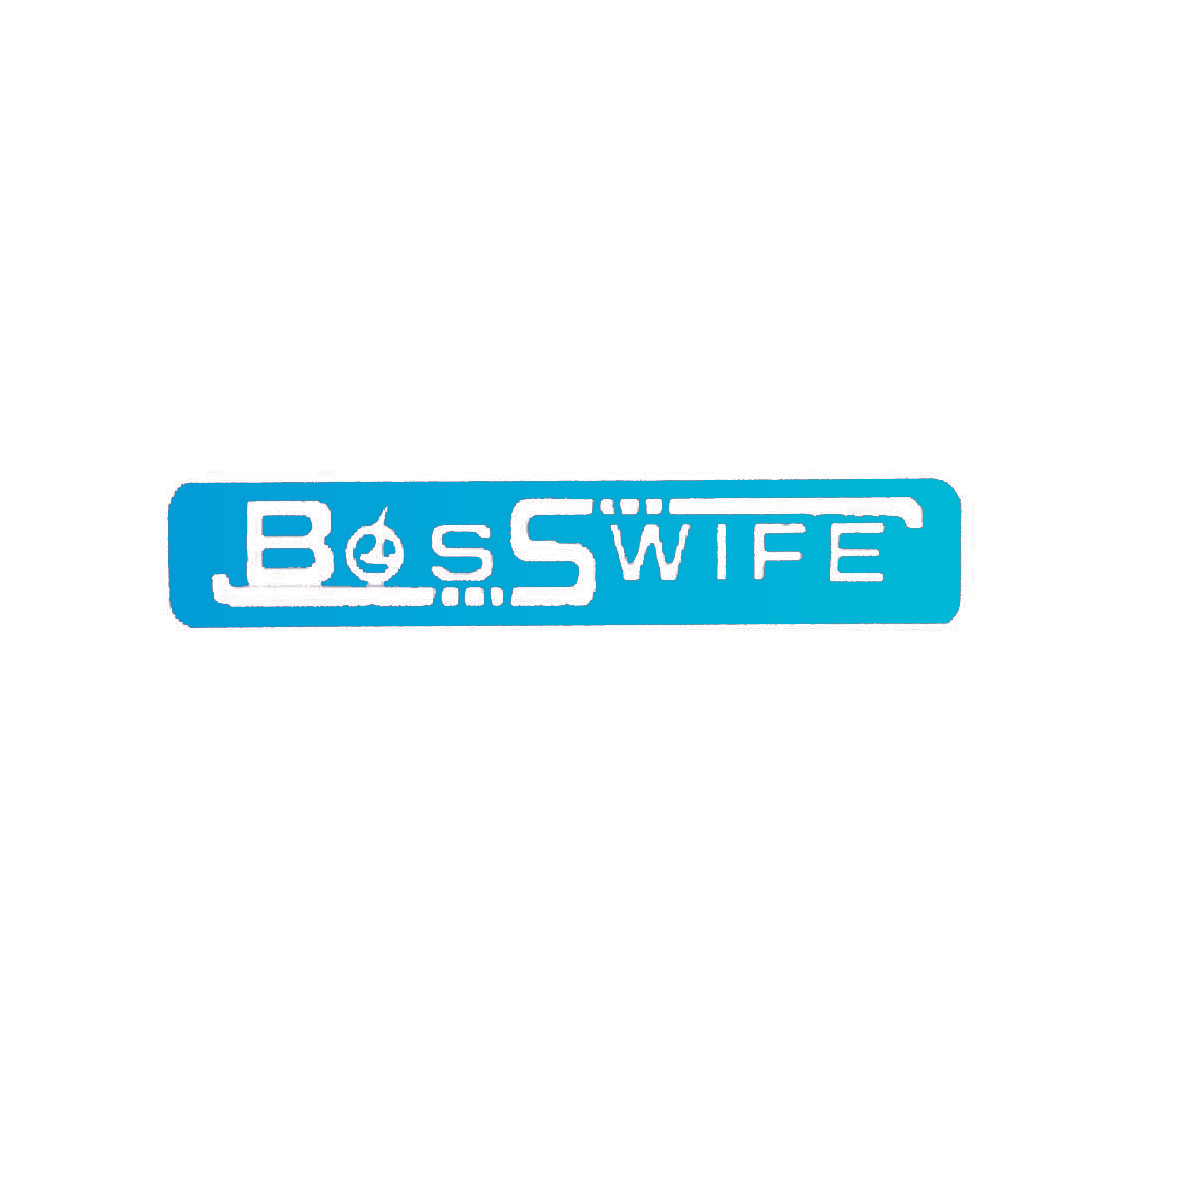 BOSS WIFE